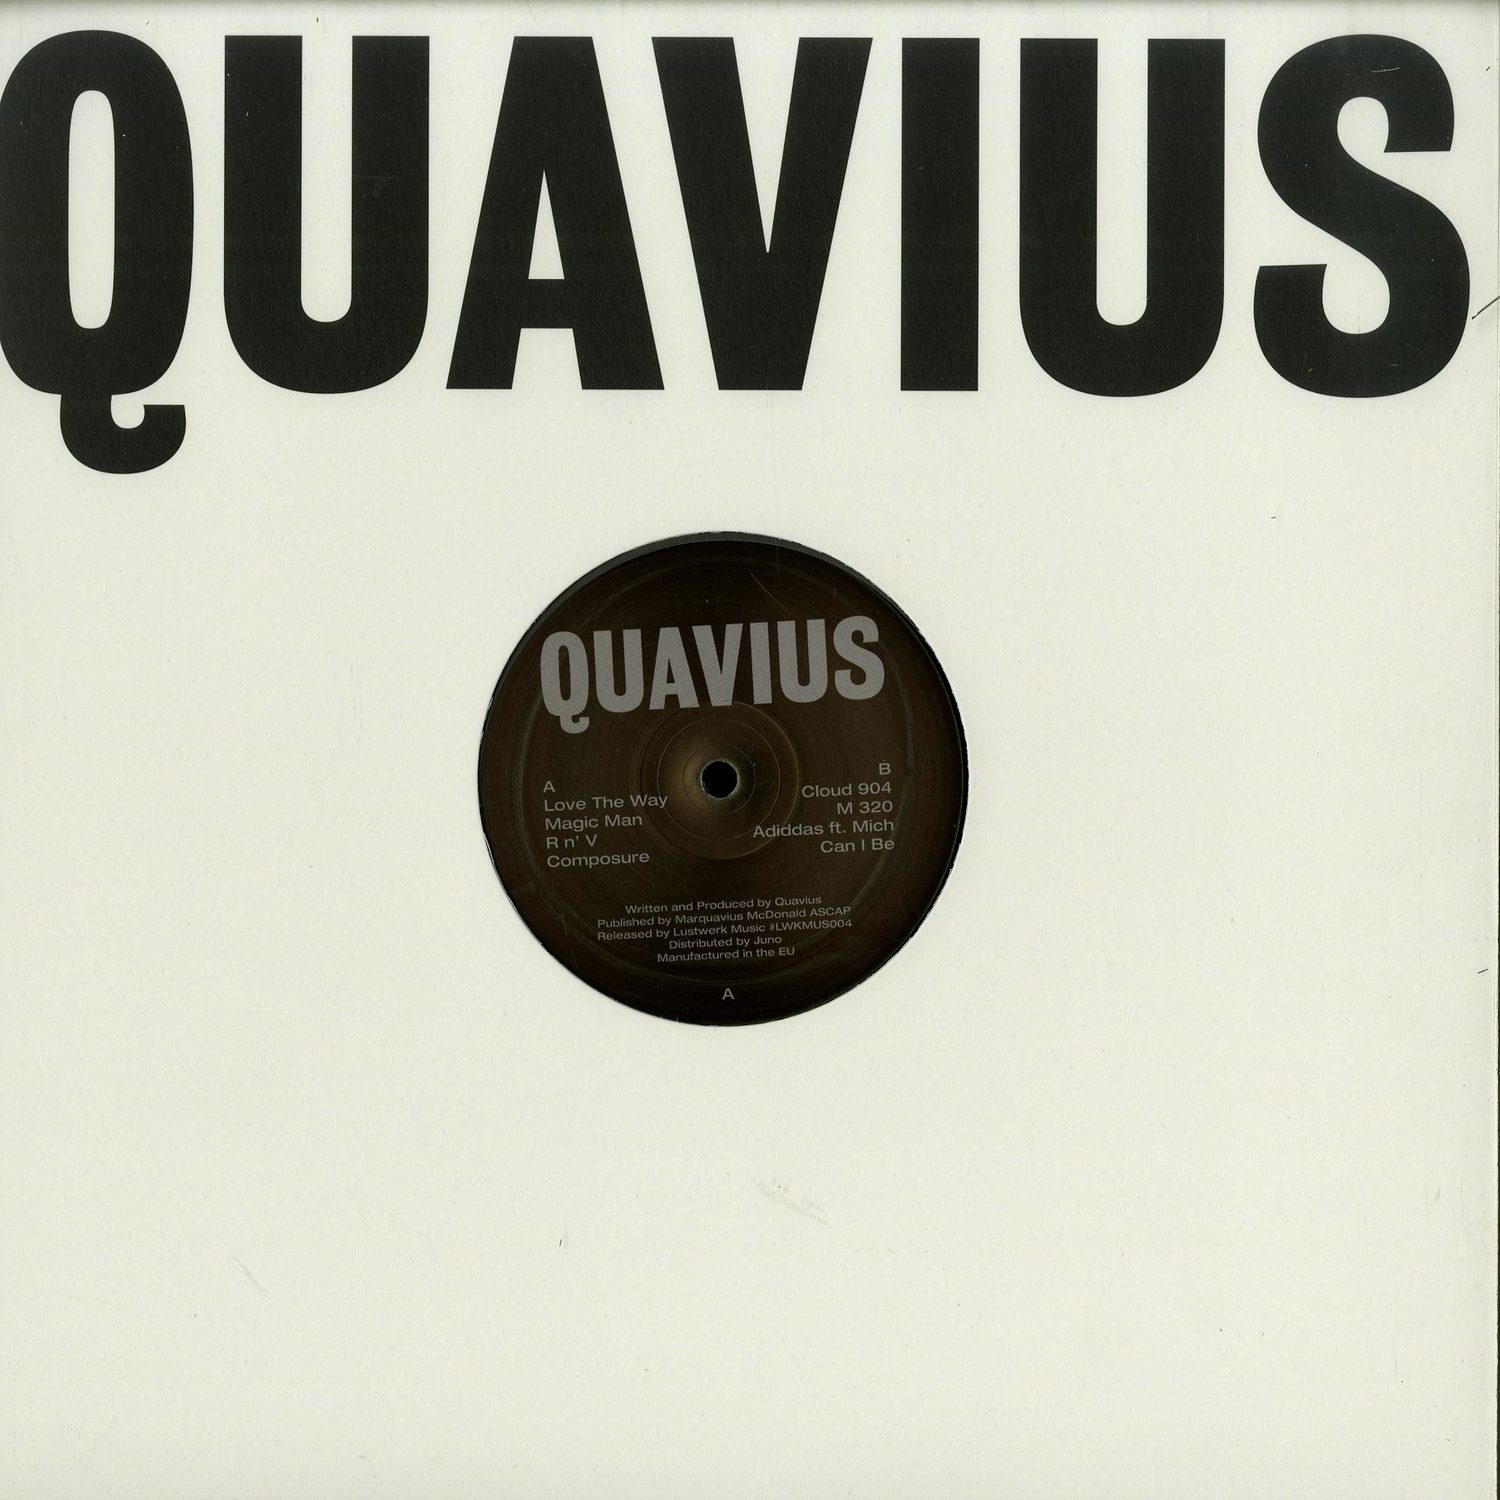 Quavius - QUAVIUS